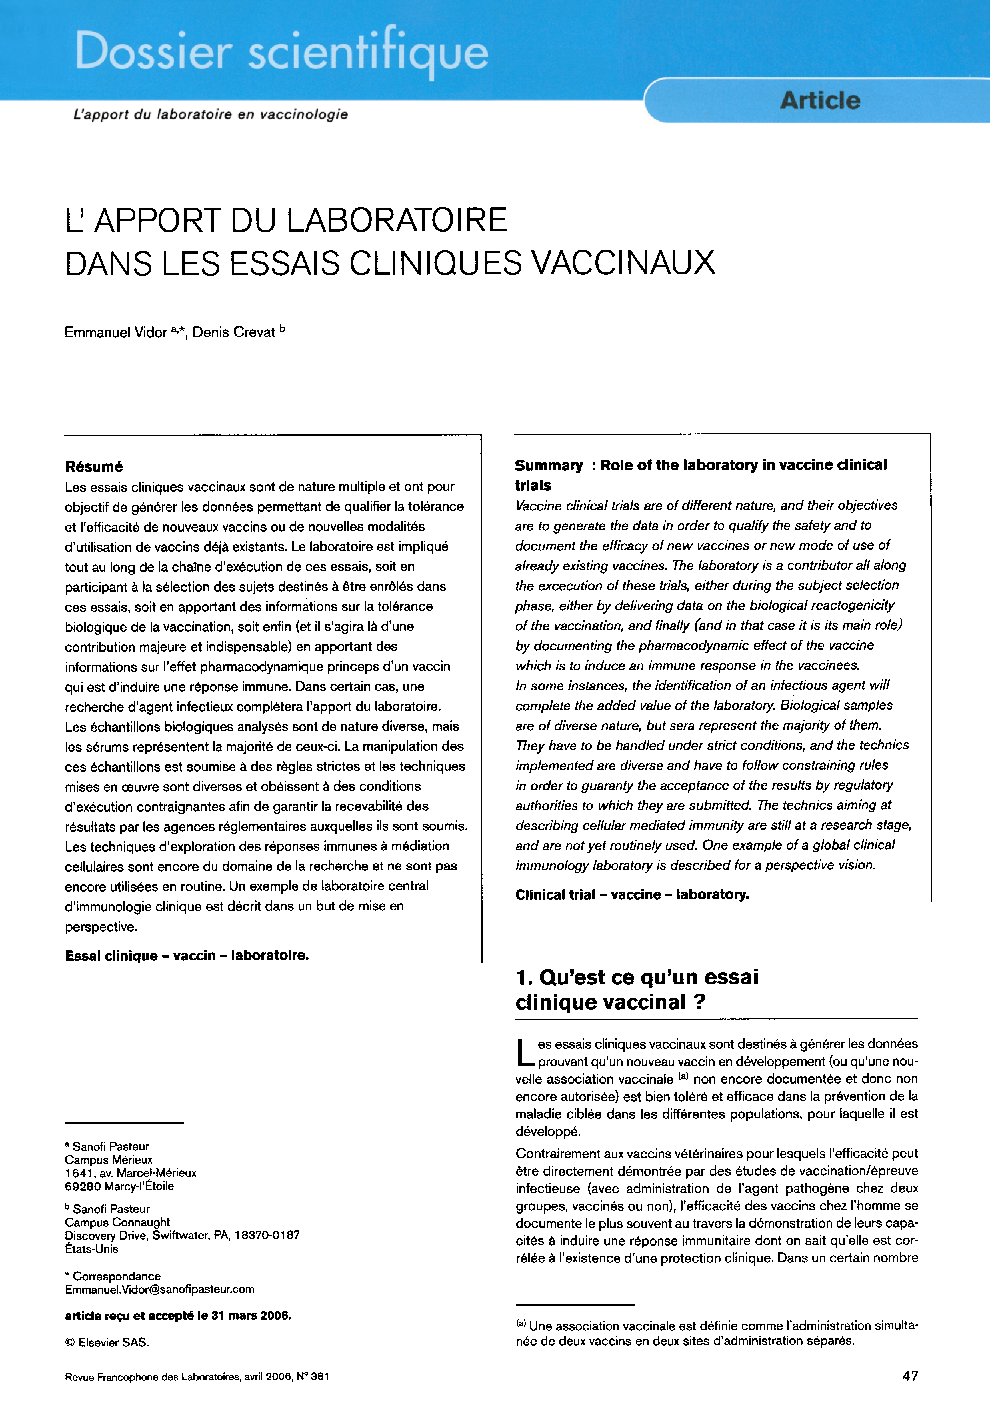 L'apport du laboratoire dans les essais cliniques vaccinaux